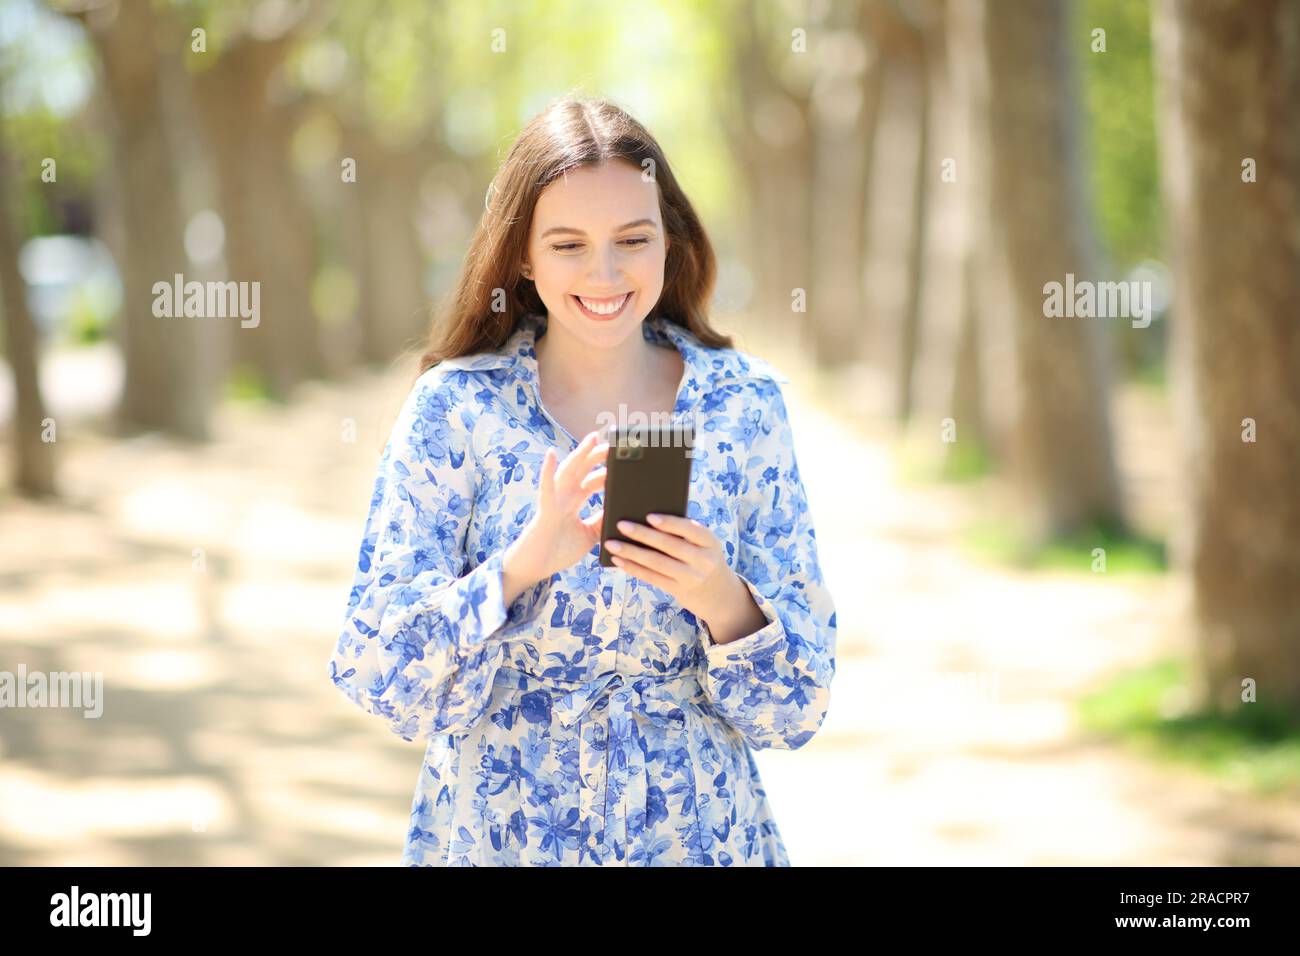 Vue avant portrait d'une femme heureuse marchant à l'aide d'un téléphone cellulaire dans un parc ensoleillé Banque D'Images